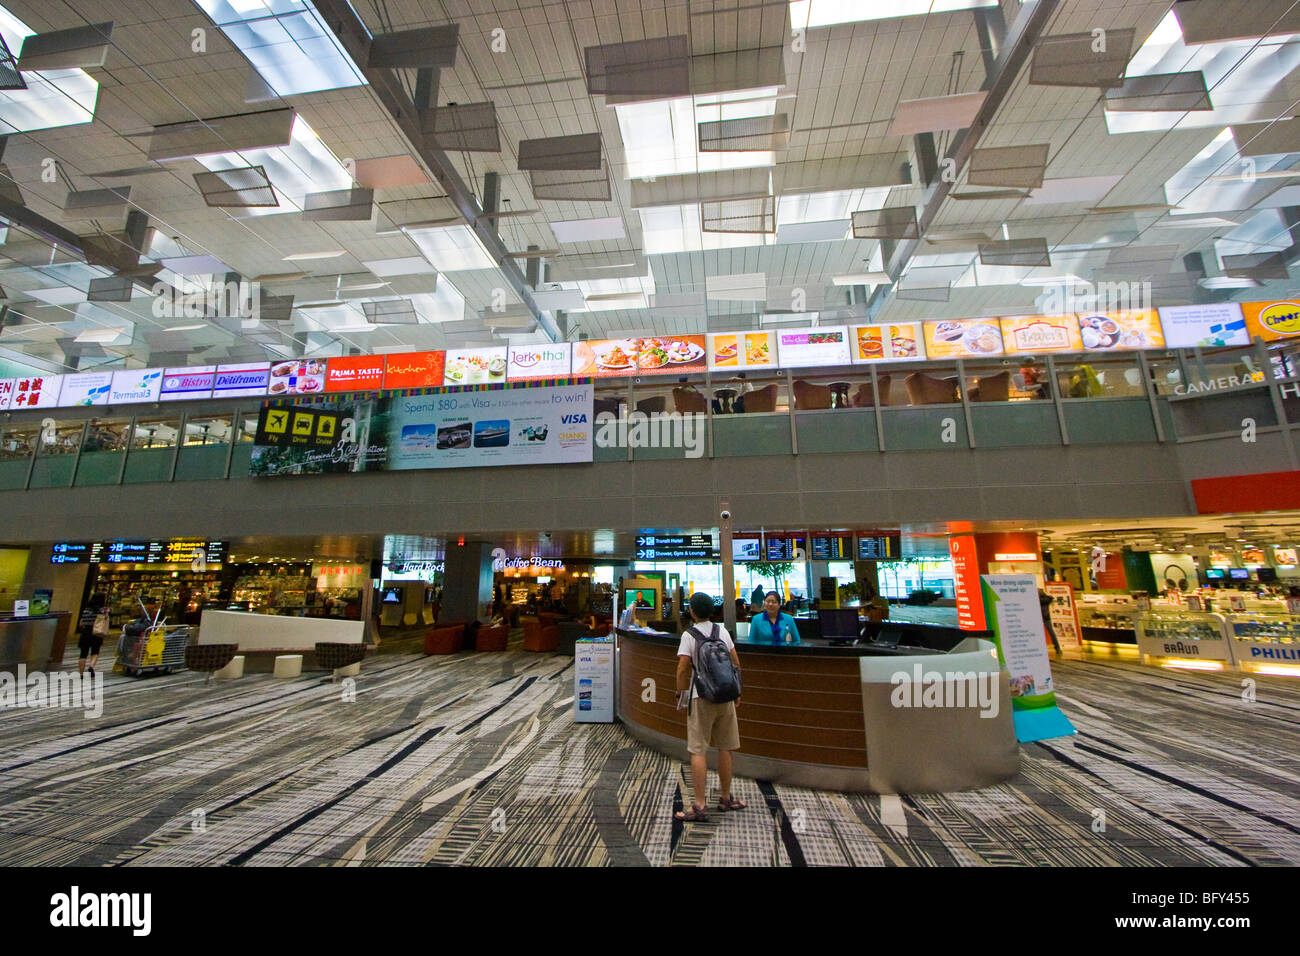 Gran variedad de restaurantes en el interior del Aeropuerto Internacional Changi de Singapur Foto de stock